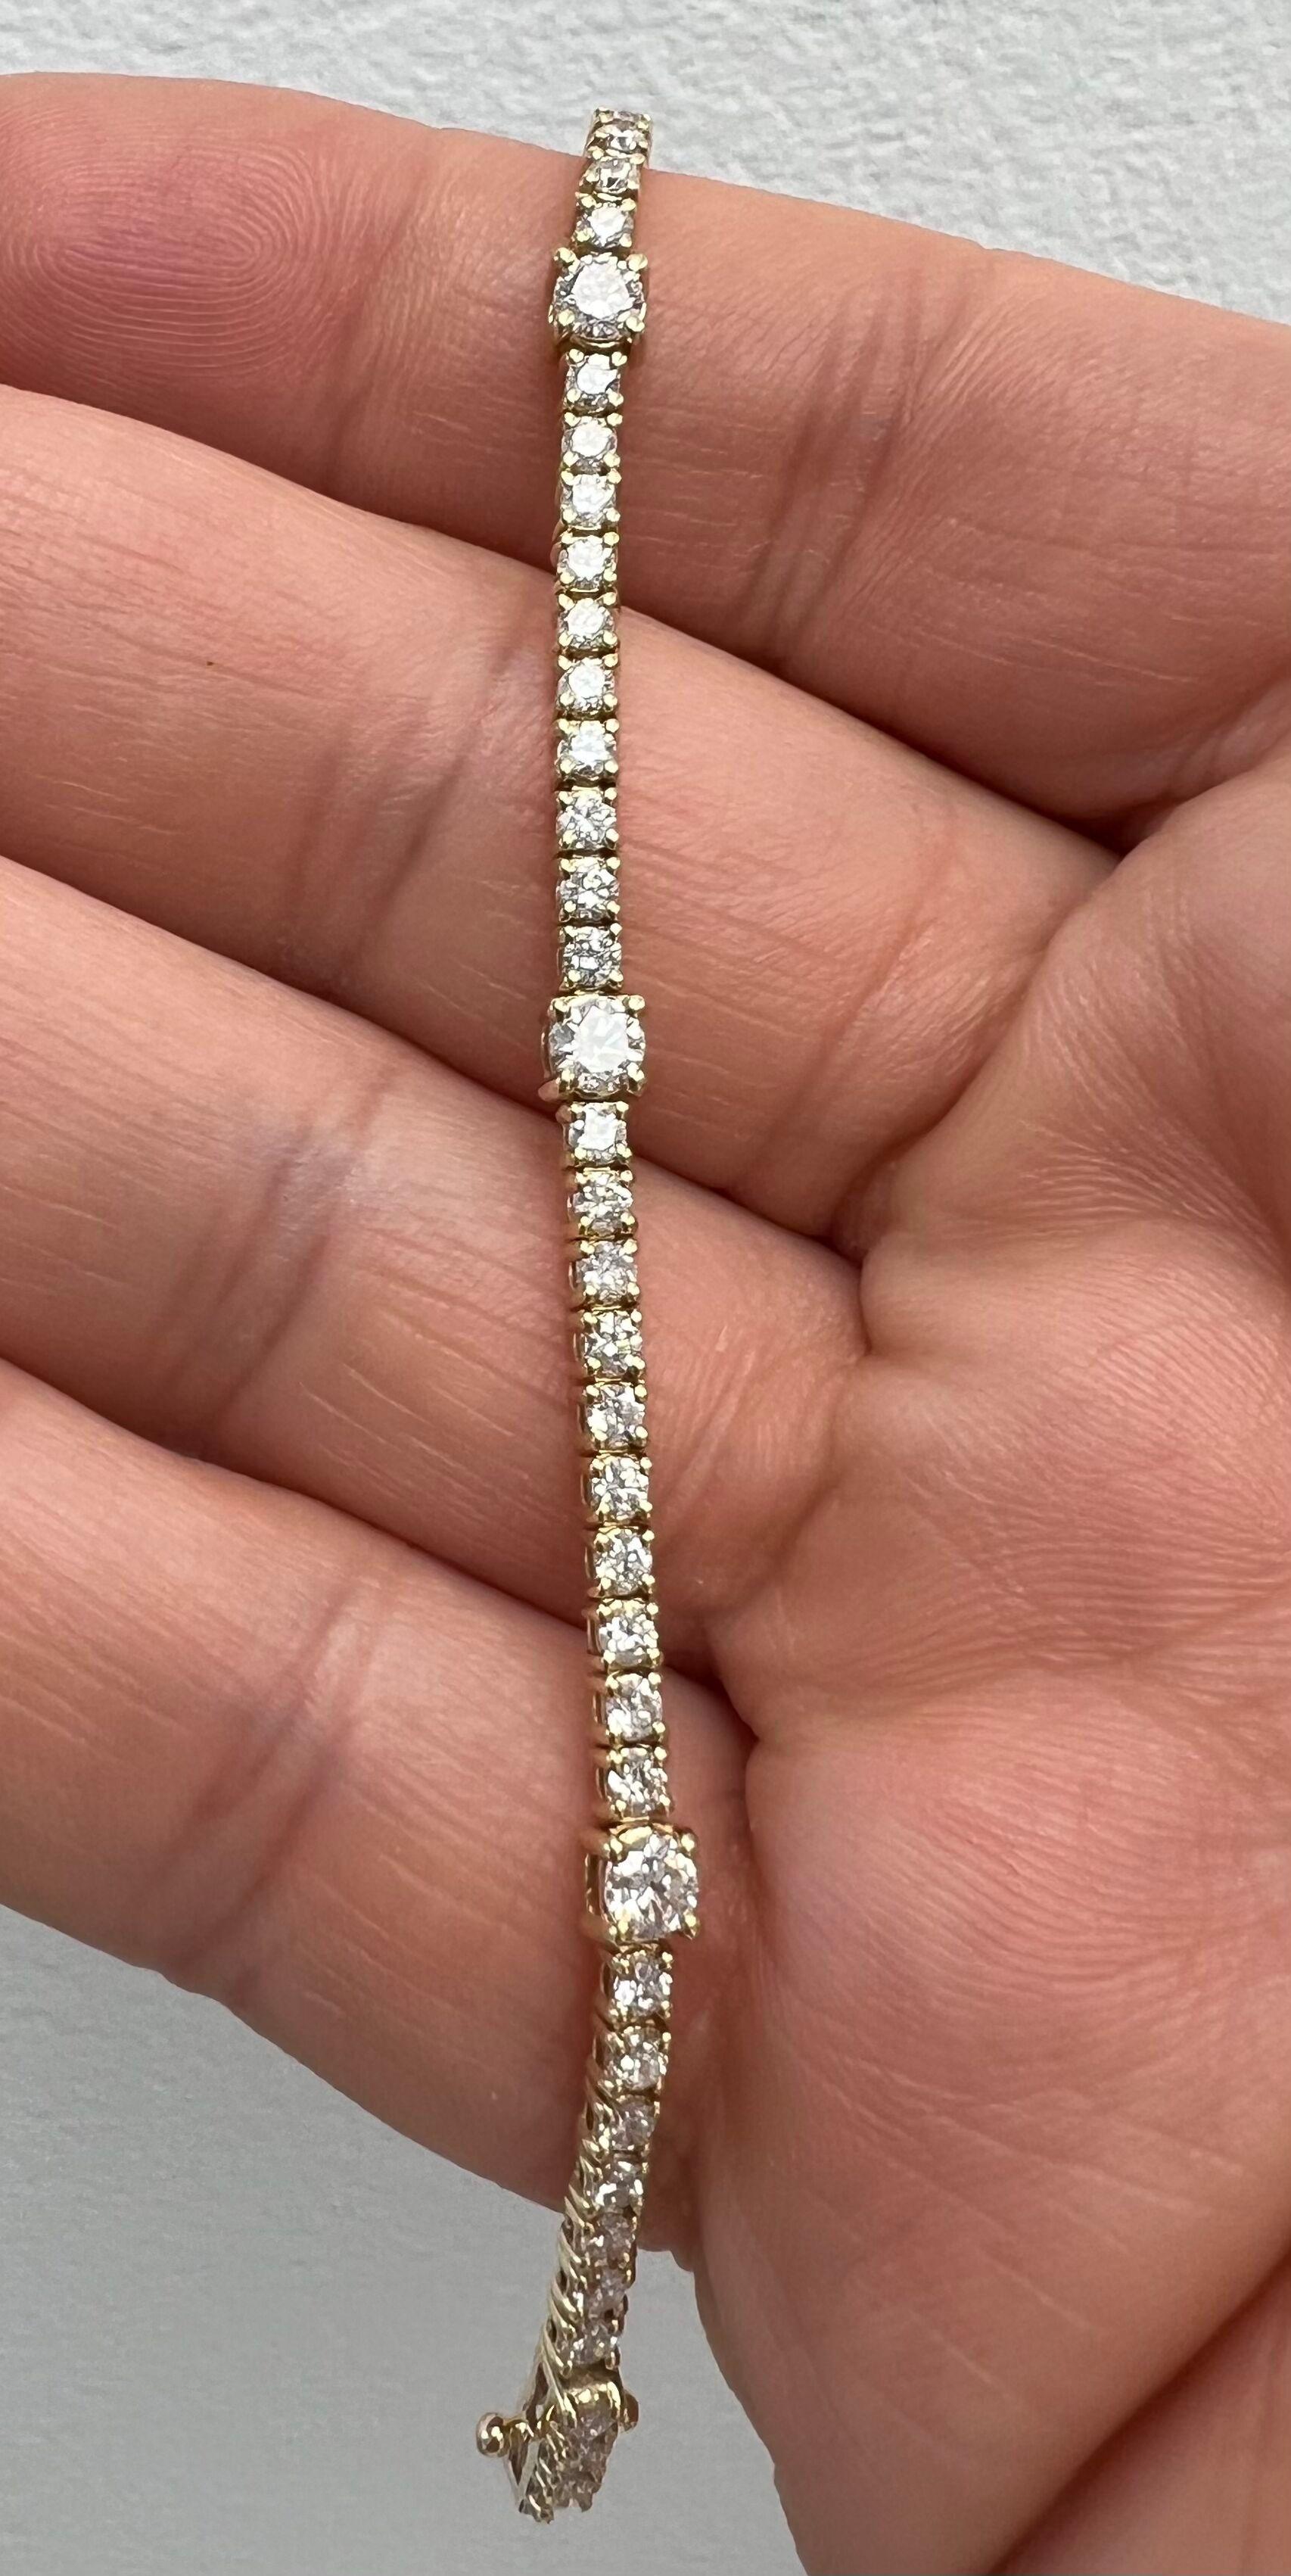 Einzigartiges Tennisarmband mit fünf größeren Diamanten.
Das klassische Armband mit einem eleganten und einzigartigen Twist.
14k Gelbgold
Anzahl der kleinen Diamanten: 60 - Gewicht der kleinen Diamanten: 2,55 Karat                                   